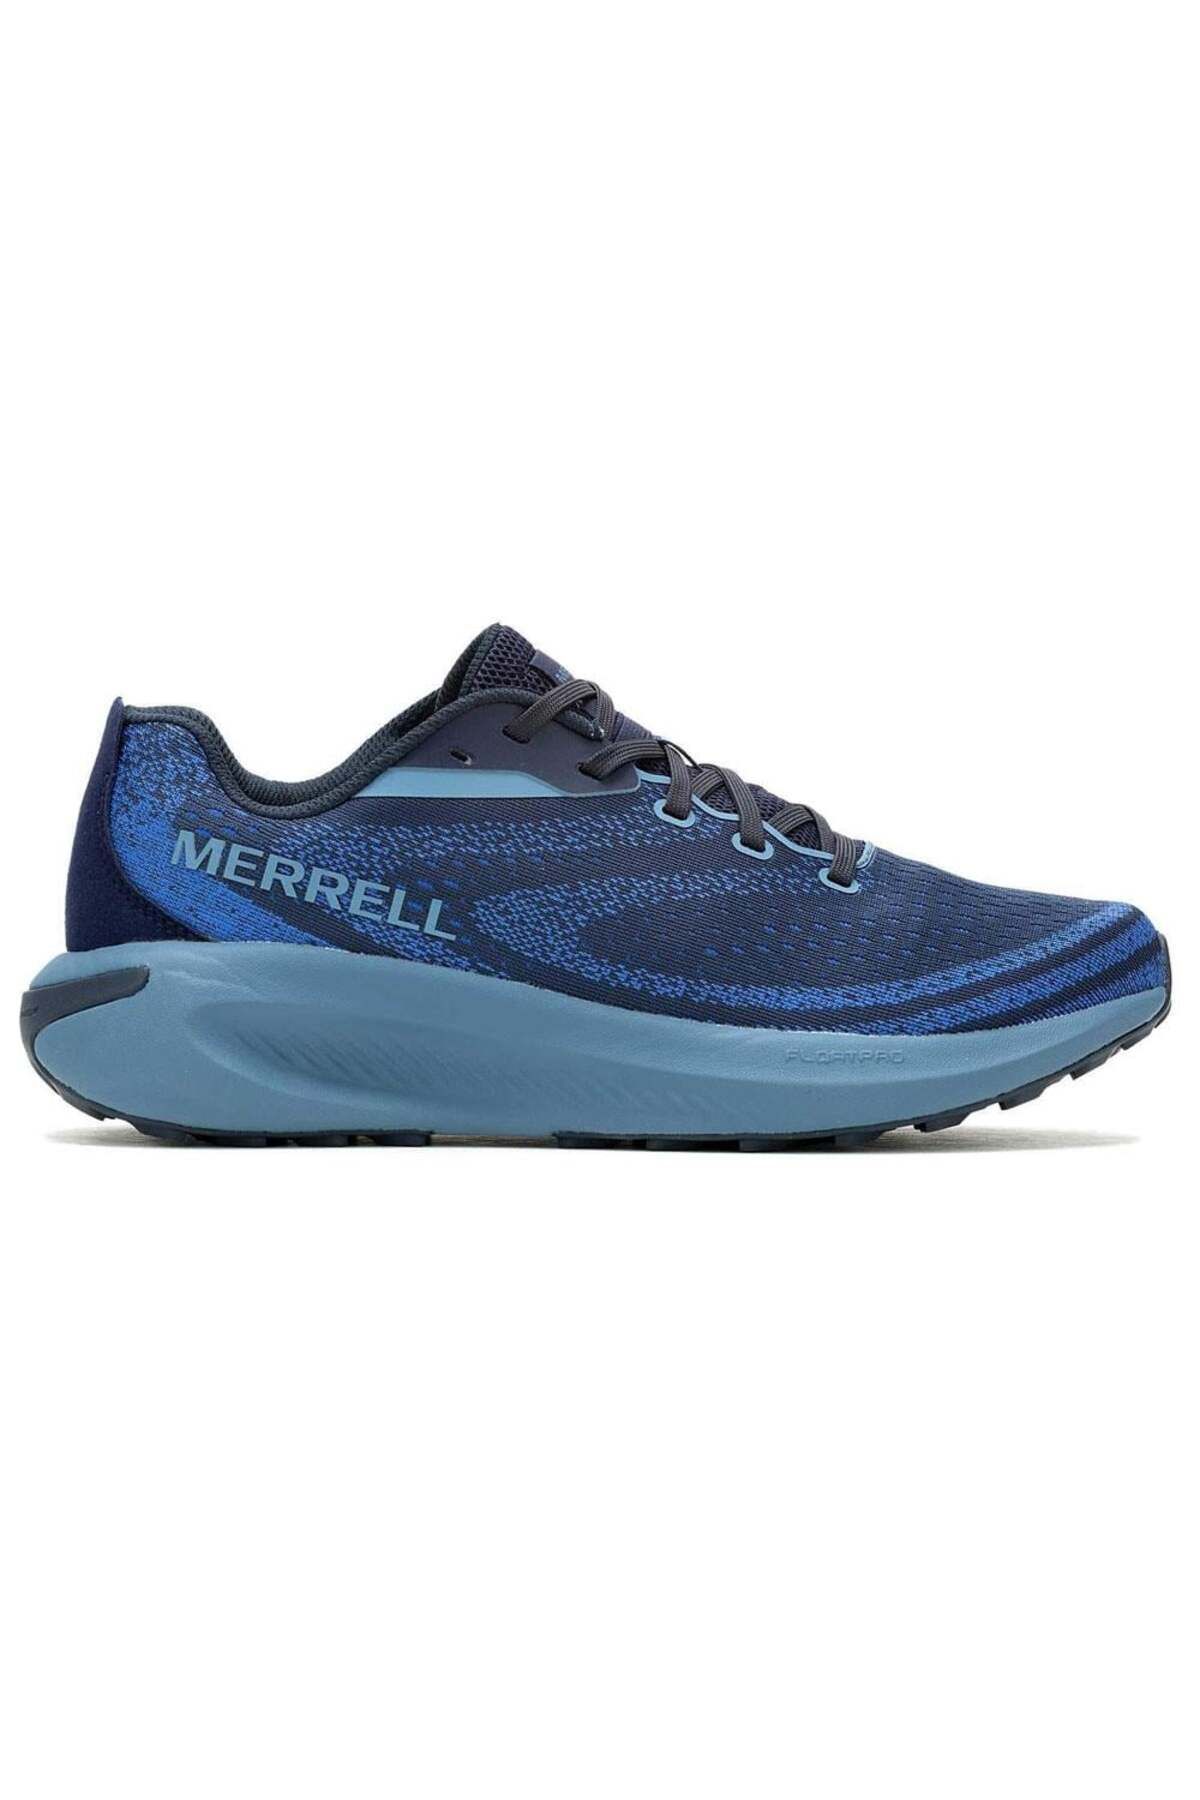 Merrell Morphlite Erkek Spor Ayakkabısı J068073